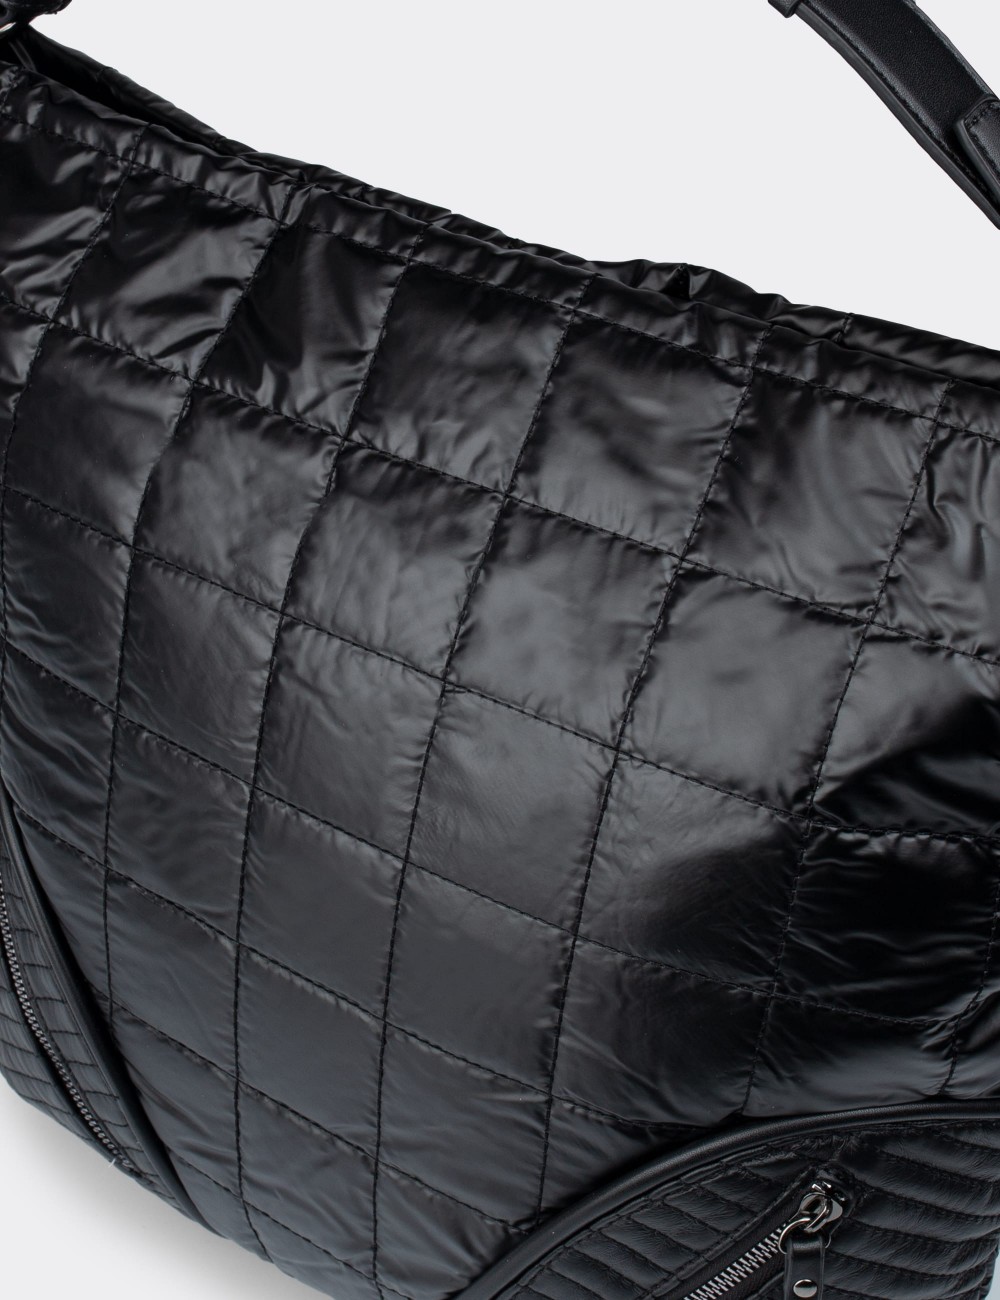 Black Shoulder Bag - M0937ZSYHY01